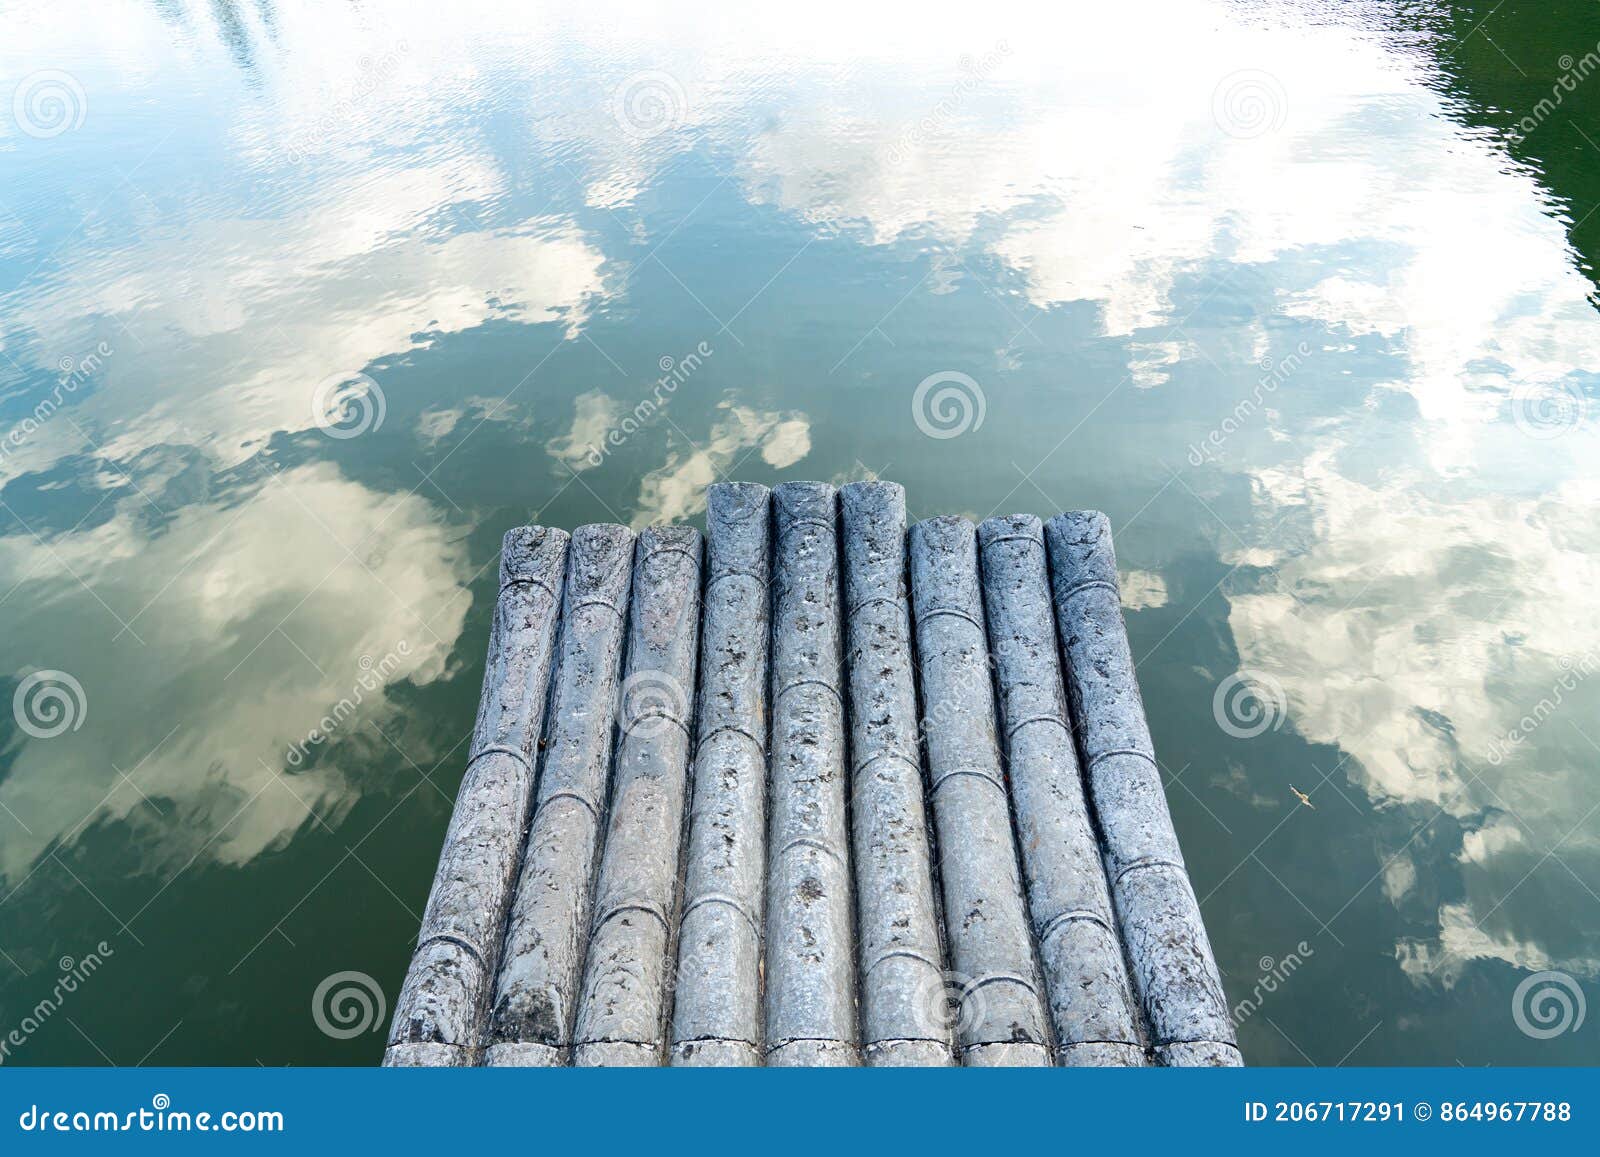 Ã§Â«Â¹Ã§Â­ÂÃ¤Â¸Å½Ã¦Â¼âÃ¦Â±Å¸Ã§Å¡âÃ¥â¬âÃ¥Â½Â±bamboo raft and li river reflection